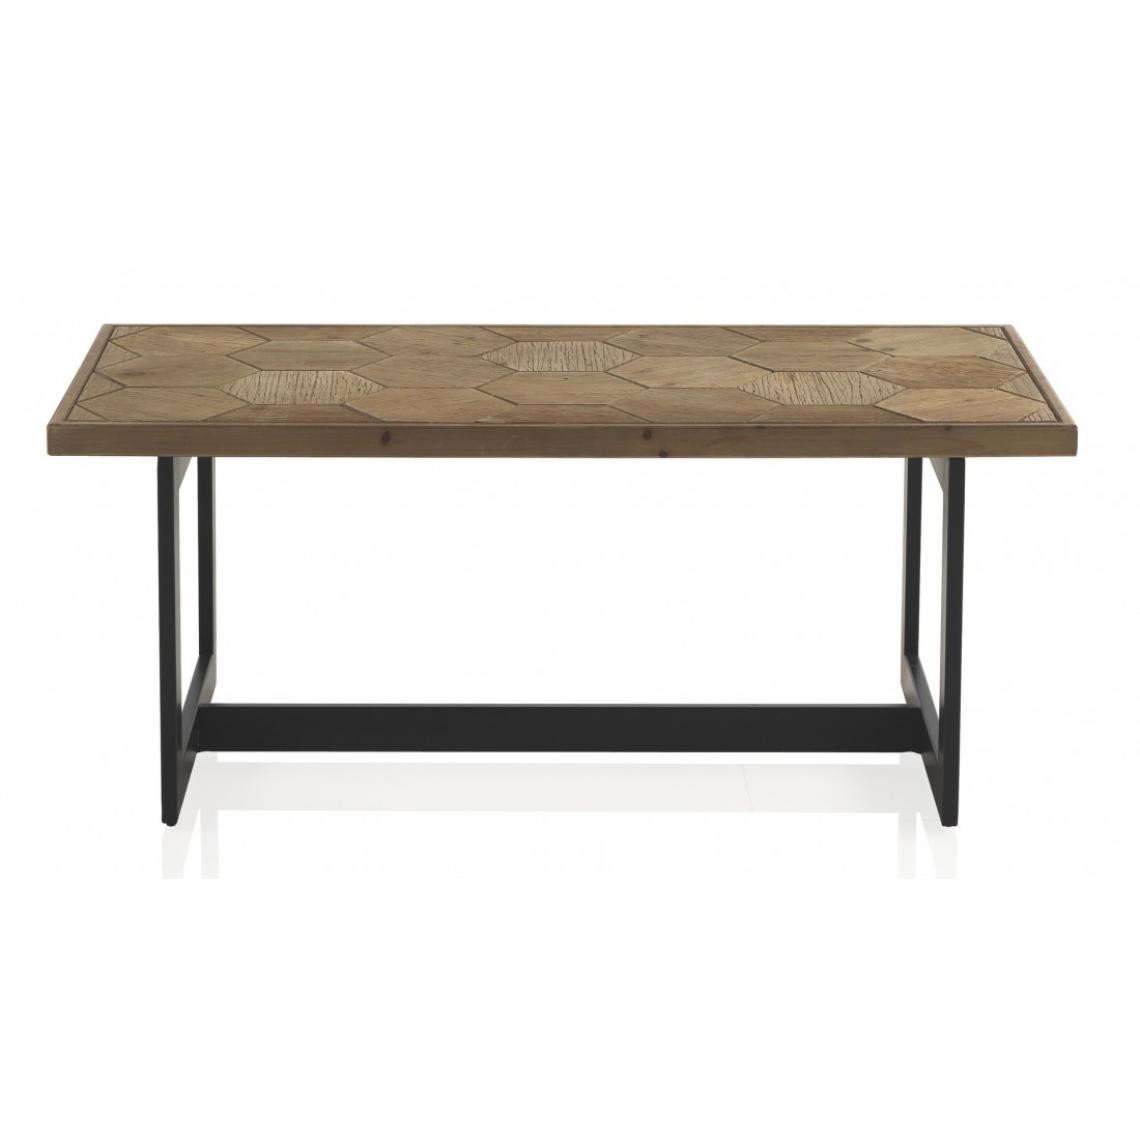 Pegane - Table basse avec plateau en bois de sapin naturel et métal coloris noir - Longueur 123 x Hauteur 50 x Largeur 60 cm - Tables basses